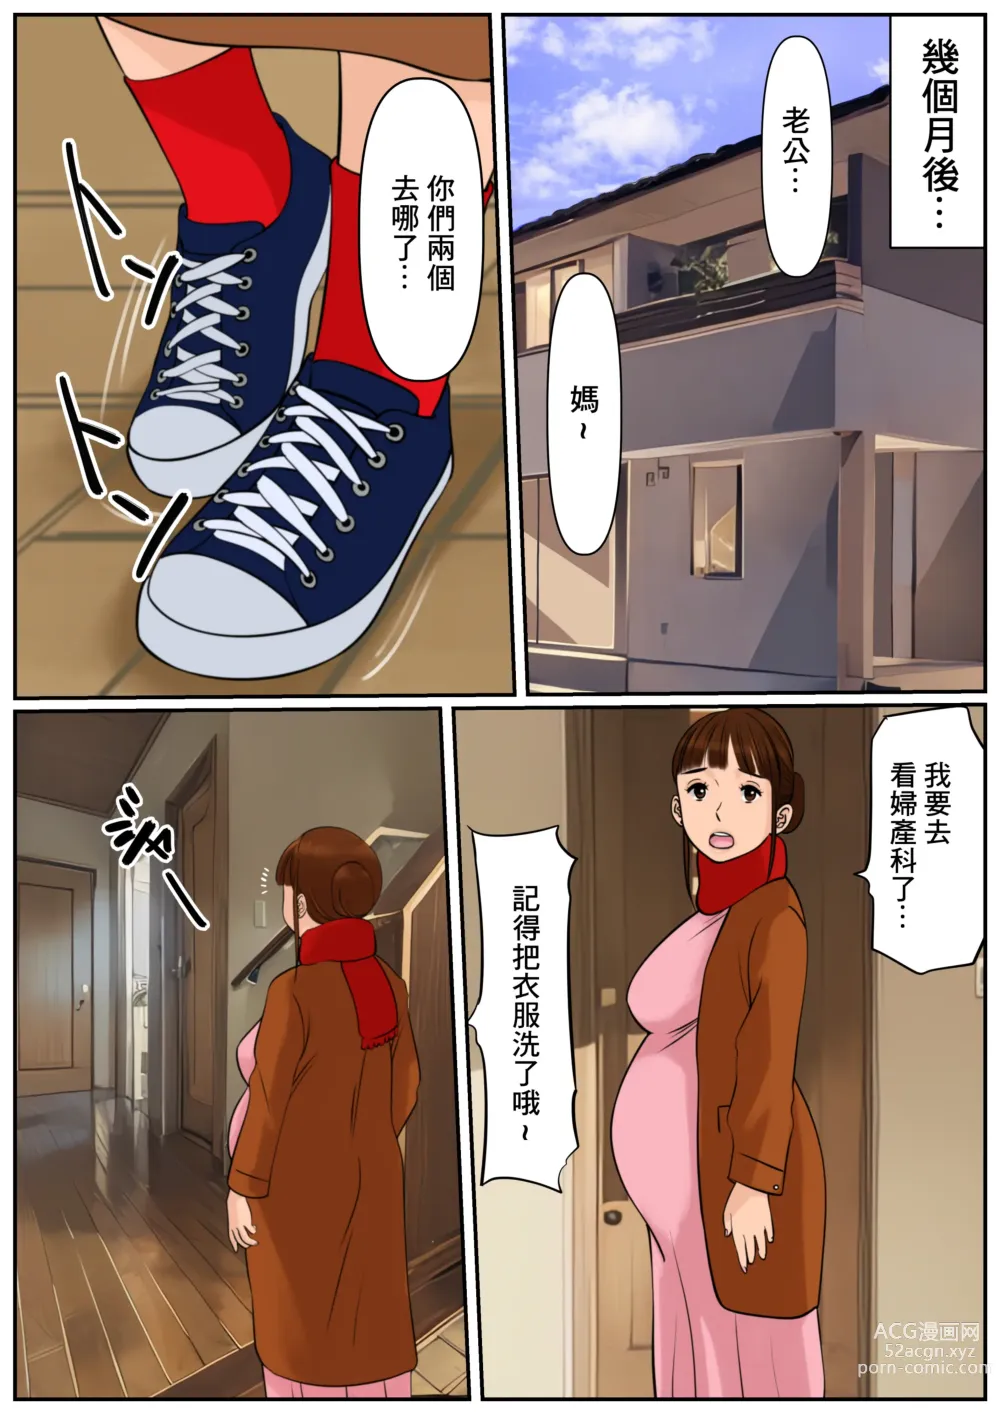 Page 9 of doujinshi 難道你是嫌棄我這個媽媽嗎?